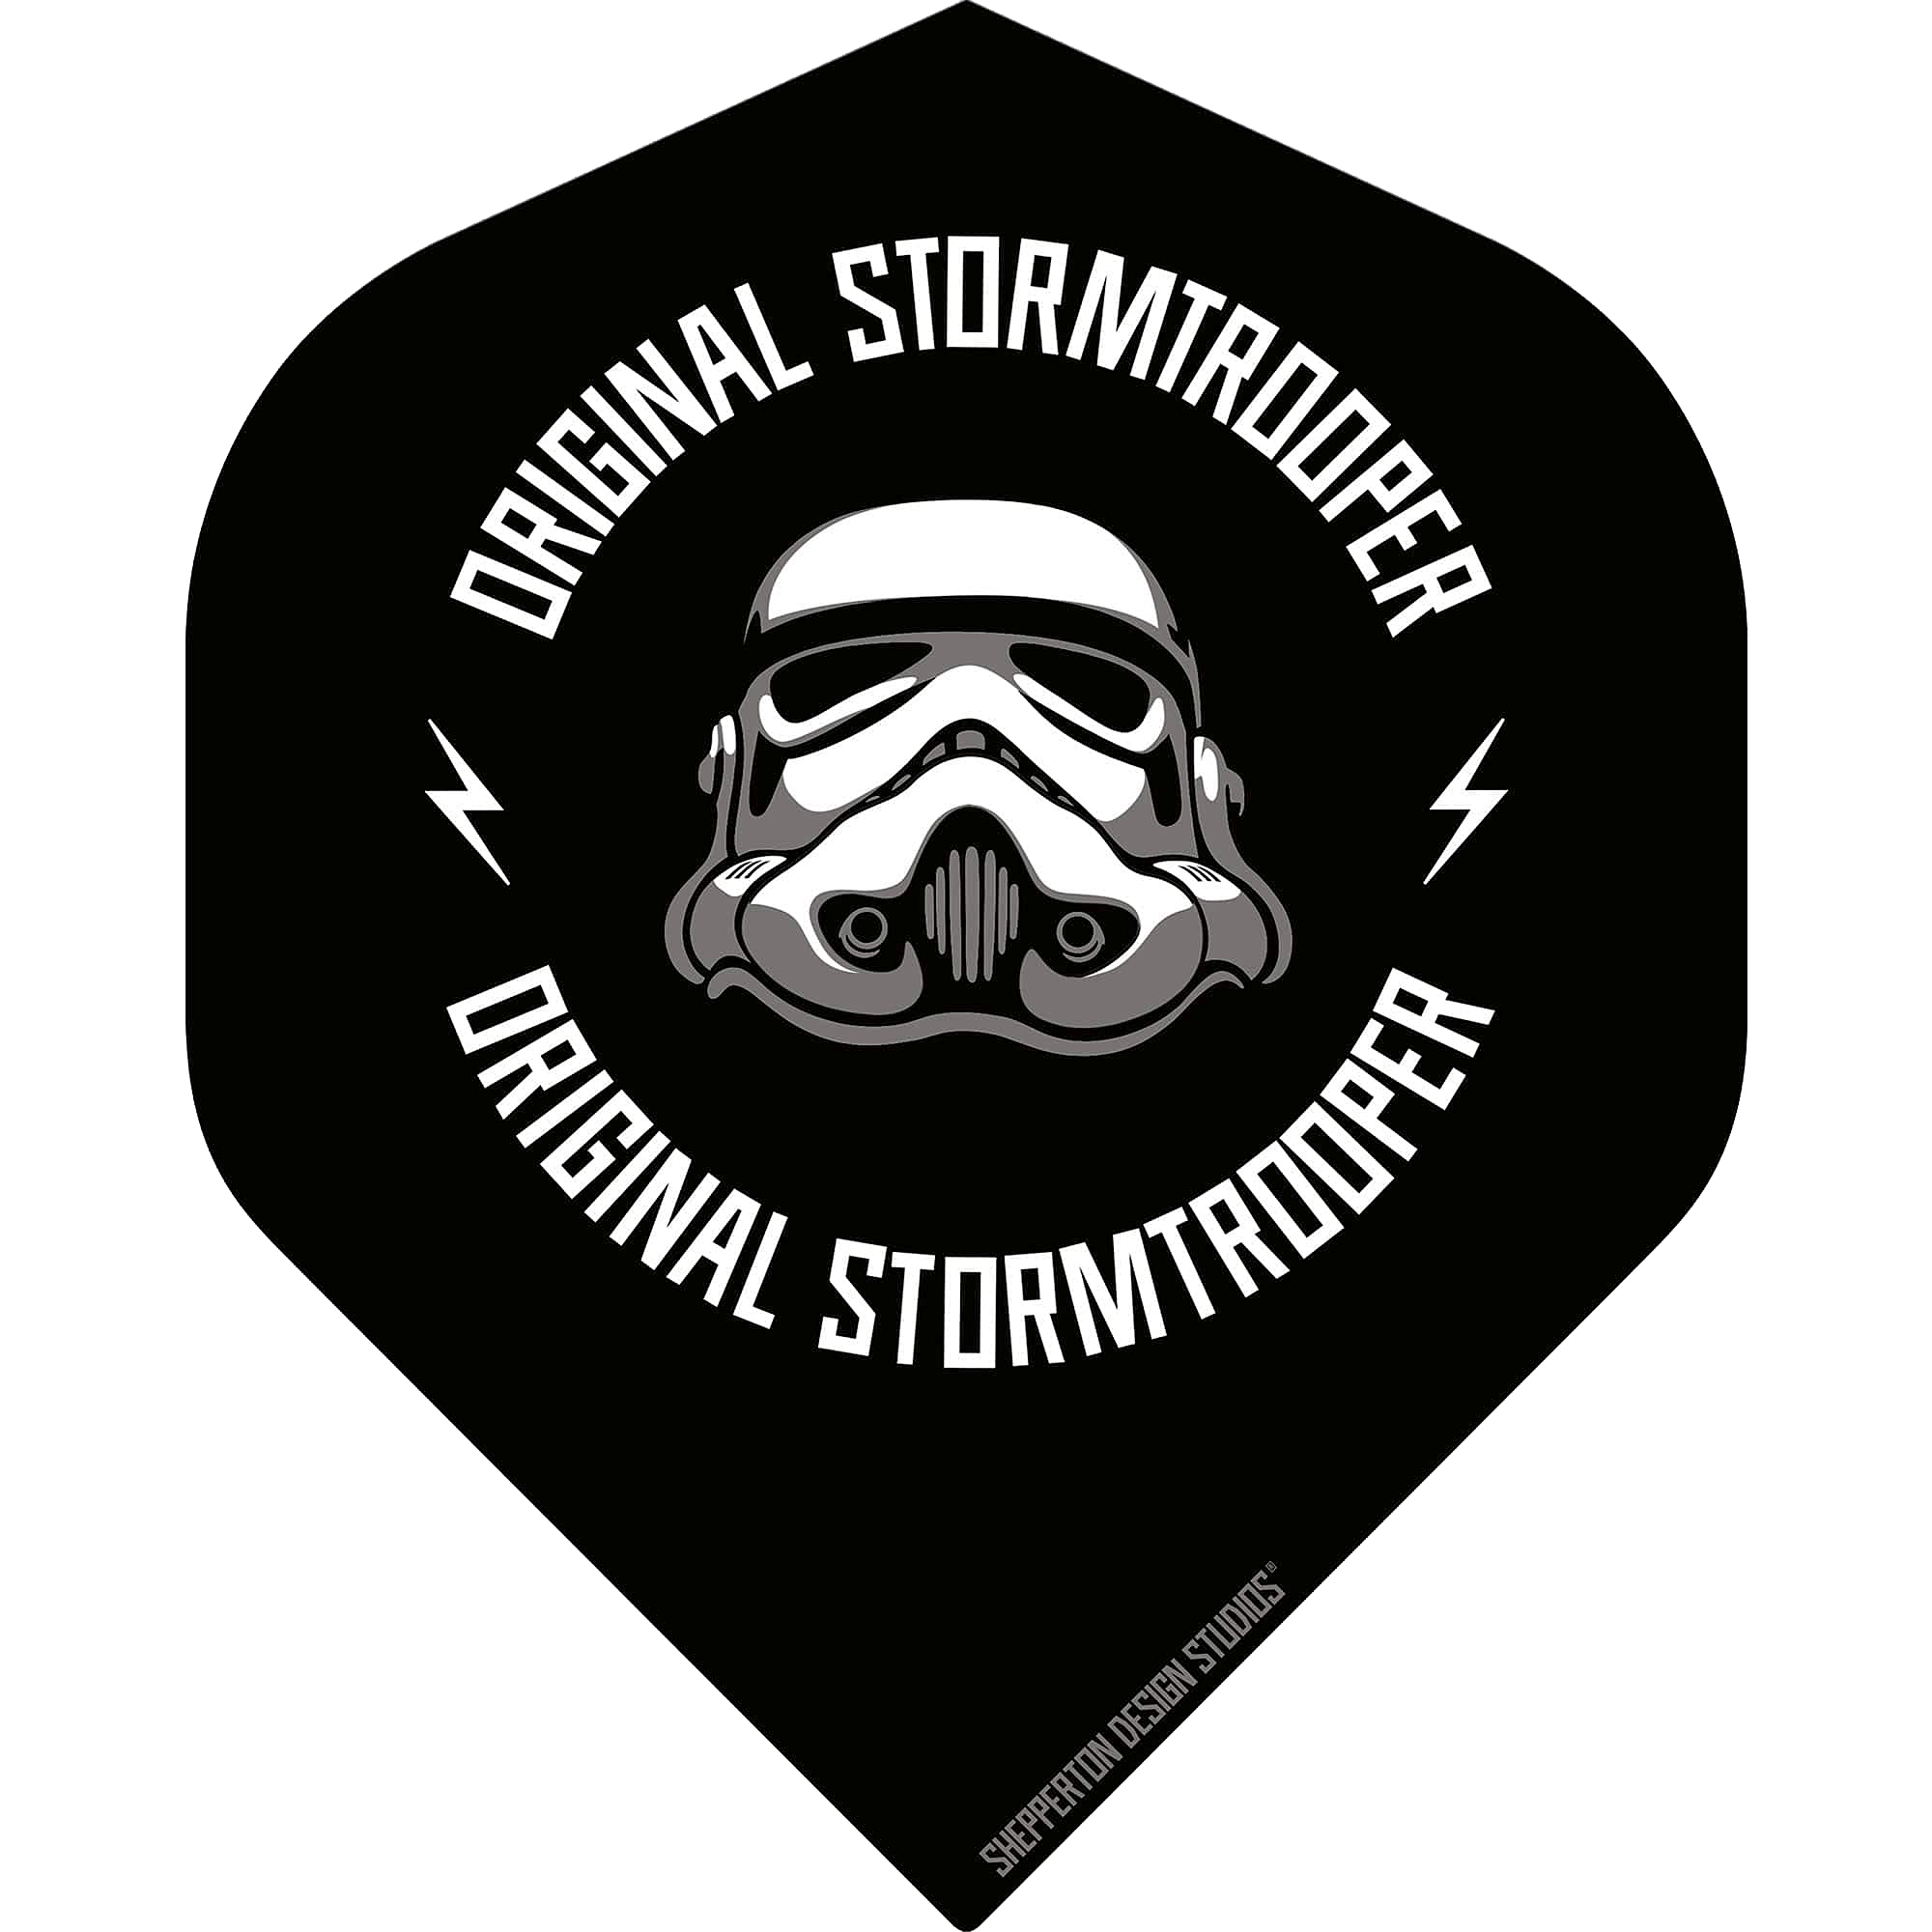 DartSturm.de - Storm Trooper Logo - Standard